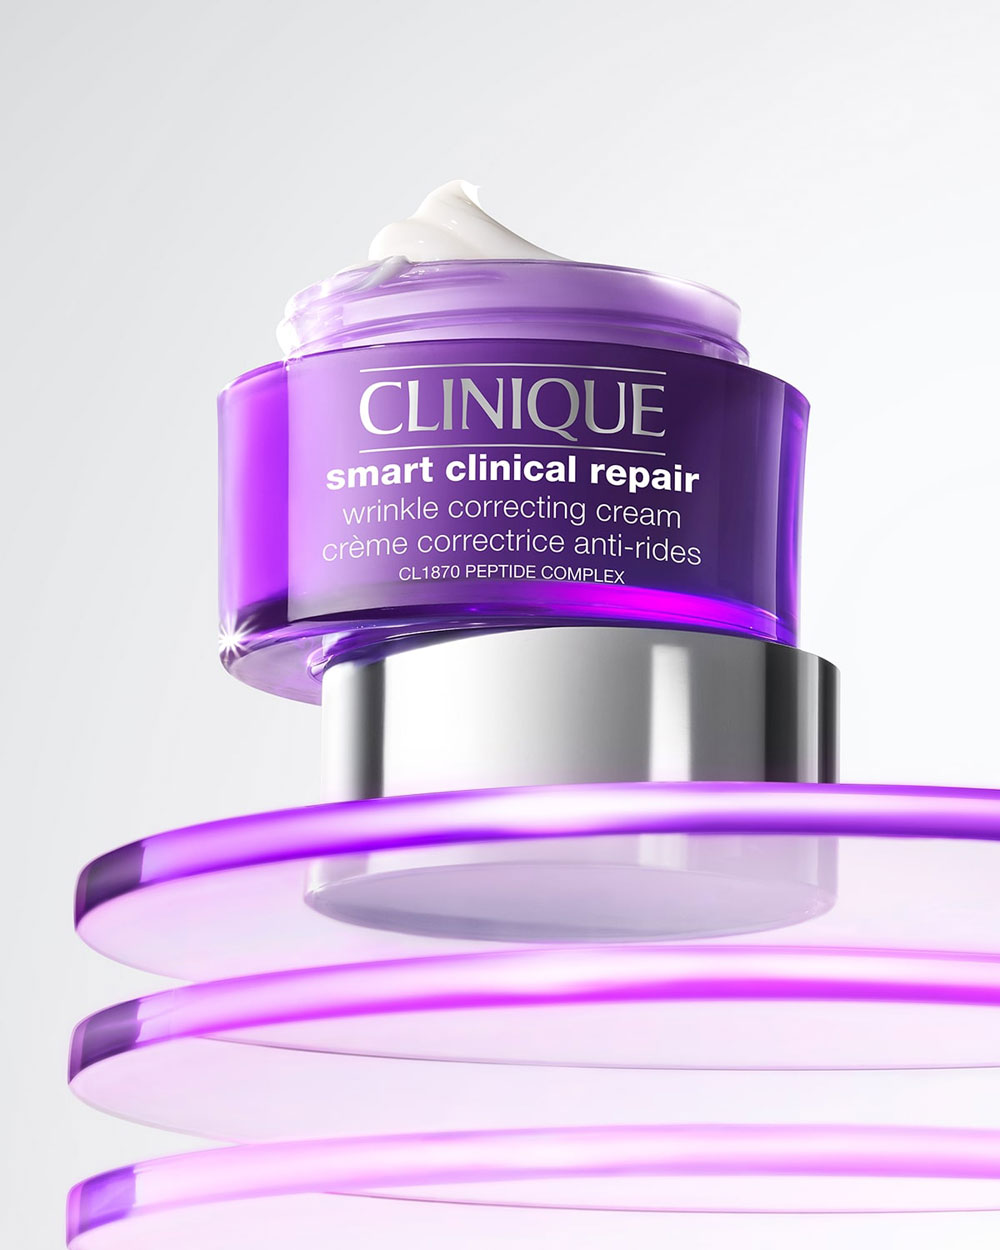 Auf sonrisa gibt es aus erster Hand alle Informationen zur neuen Clinique Smart Repair Wrinkle Correcting Cream zum Nachlesen.